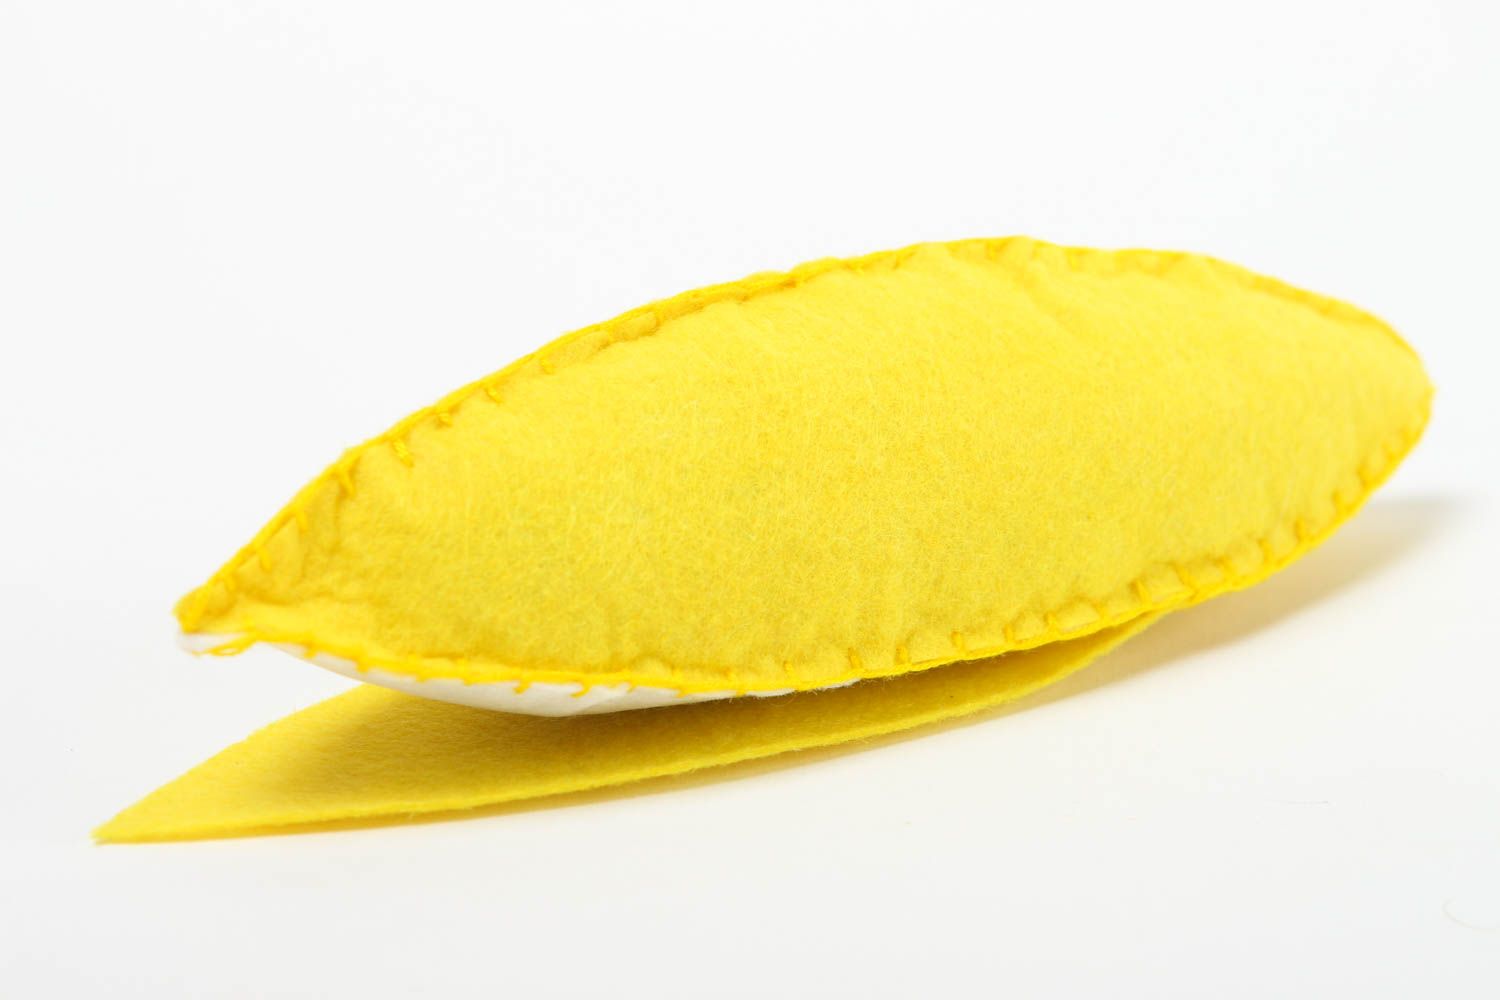 Игрушечный фрукт банан игрушка ручной работы игрушка для детей желтая красивая фото 3